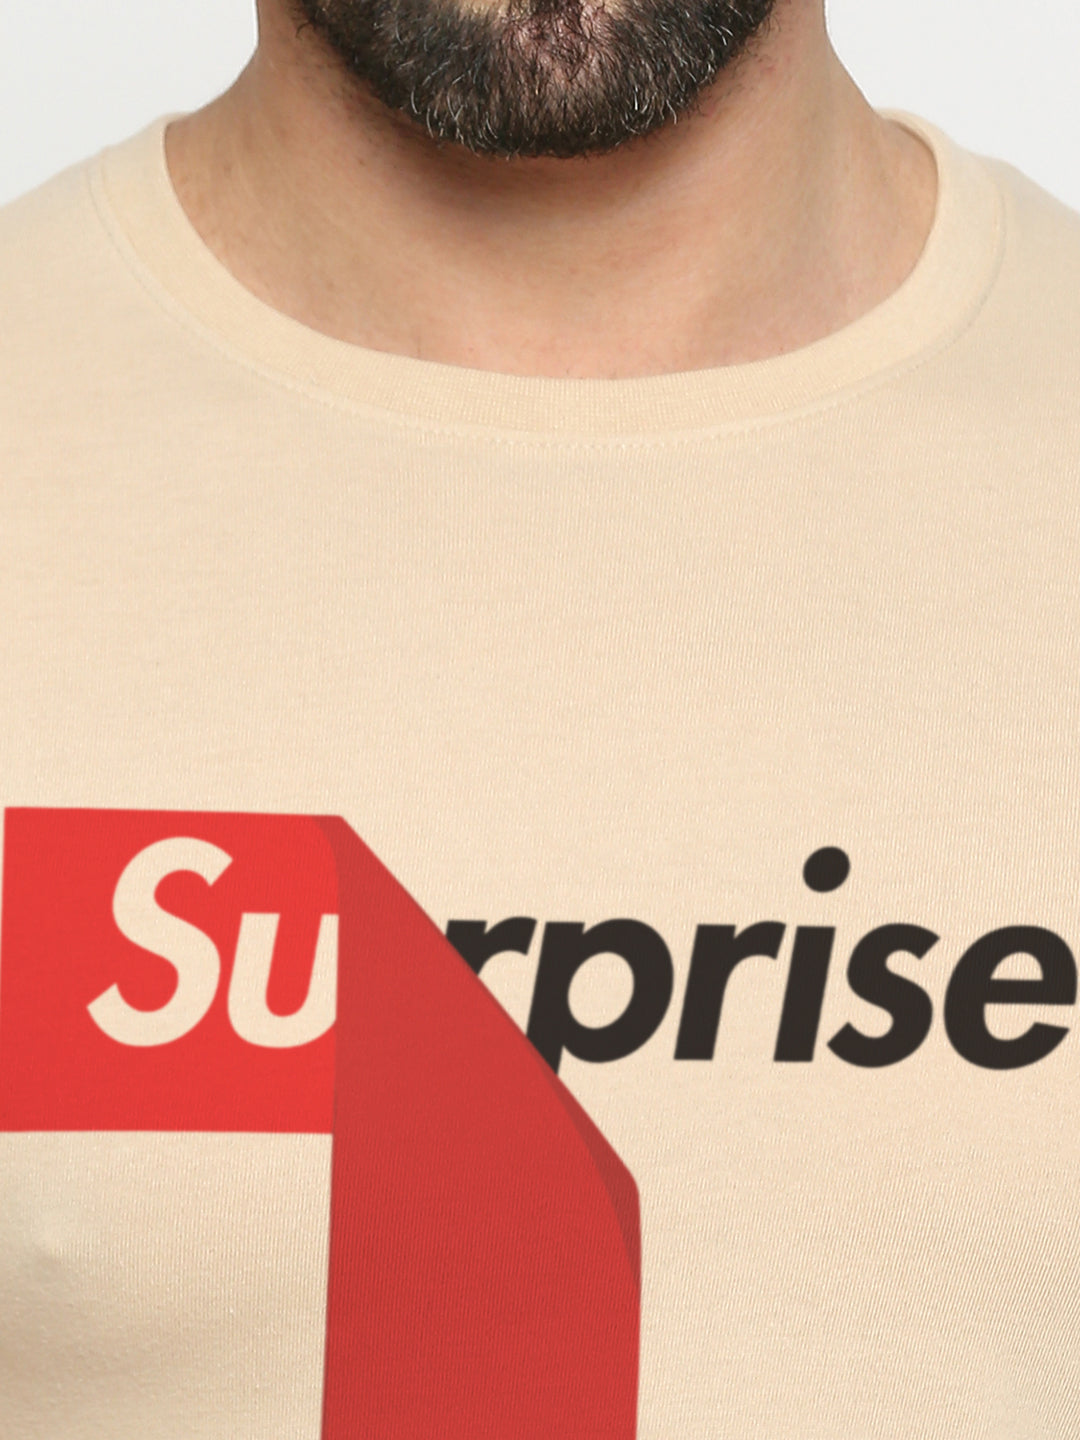 Surprise T-Shirt